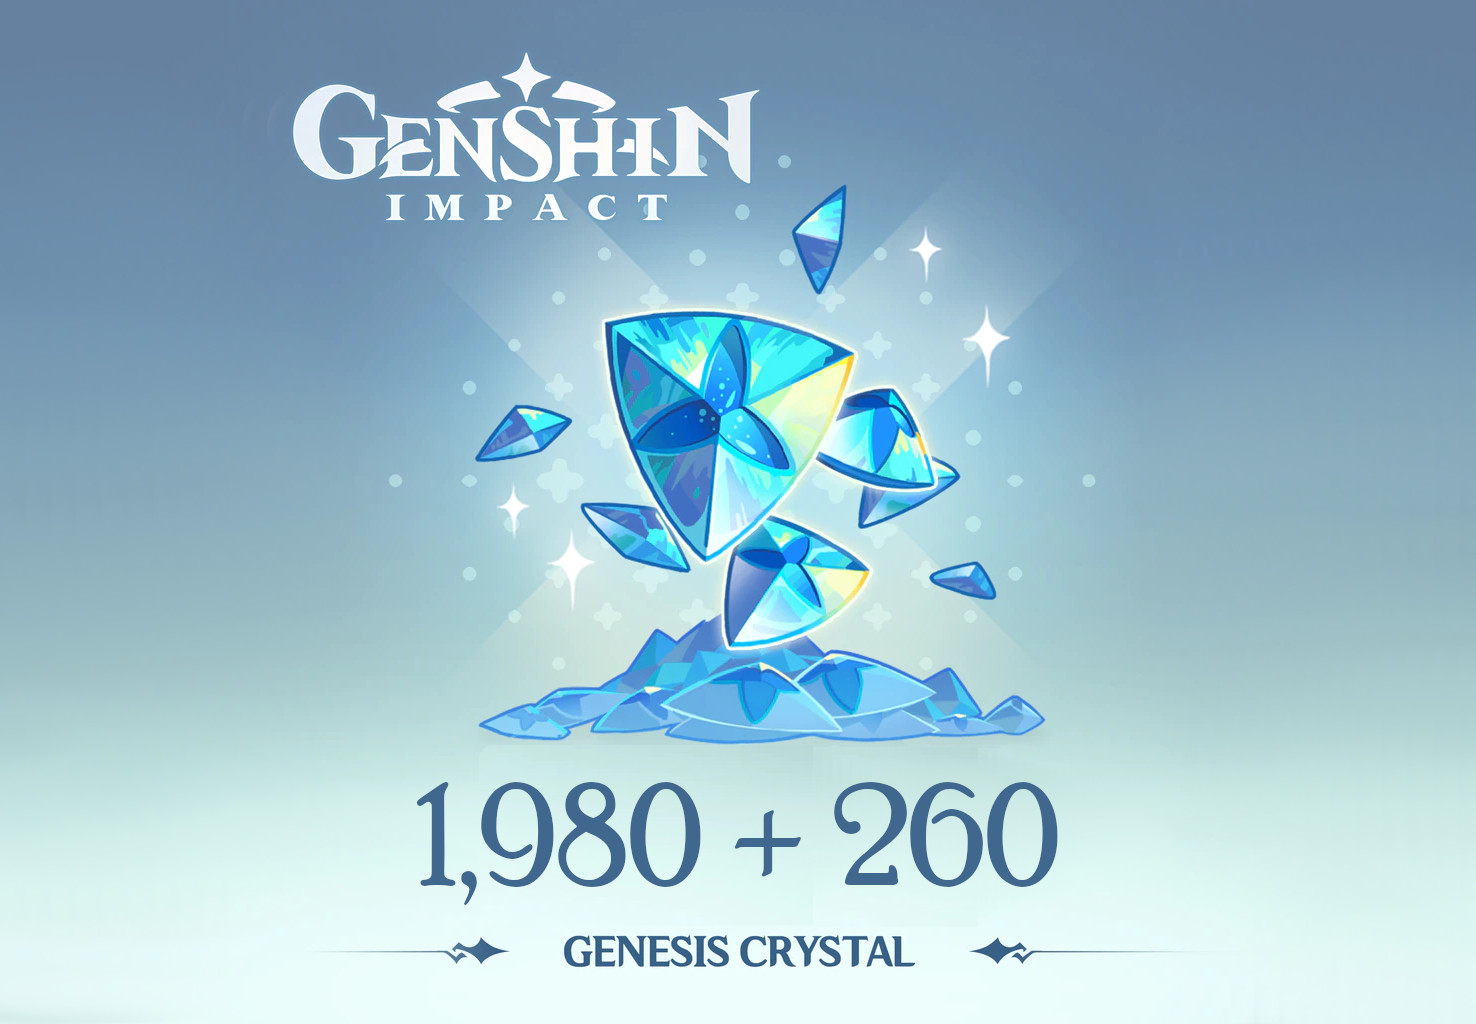 (33.9$) Genshin Impact - 1,980 + 260 Genesis Crystals Reidos Voucher